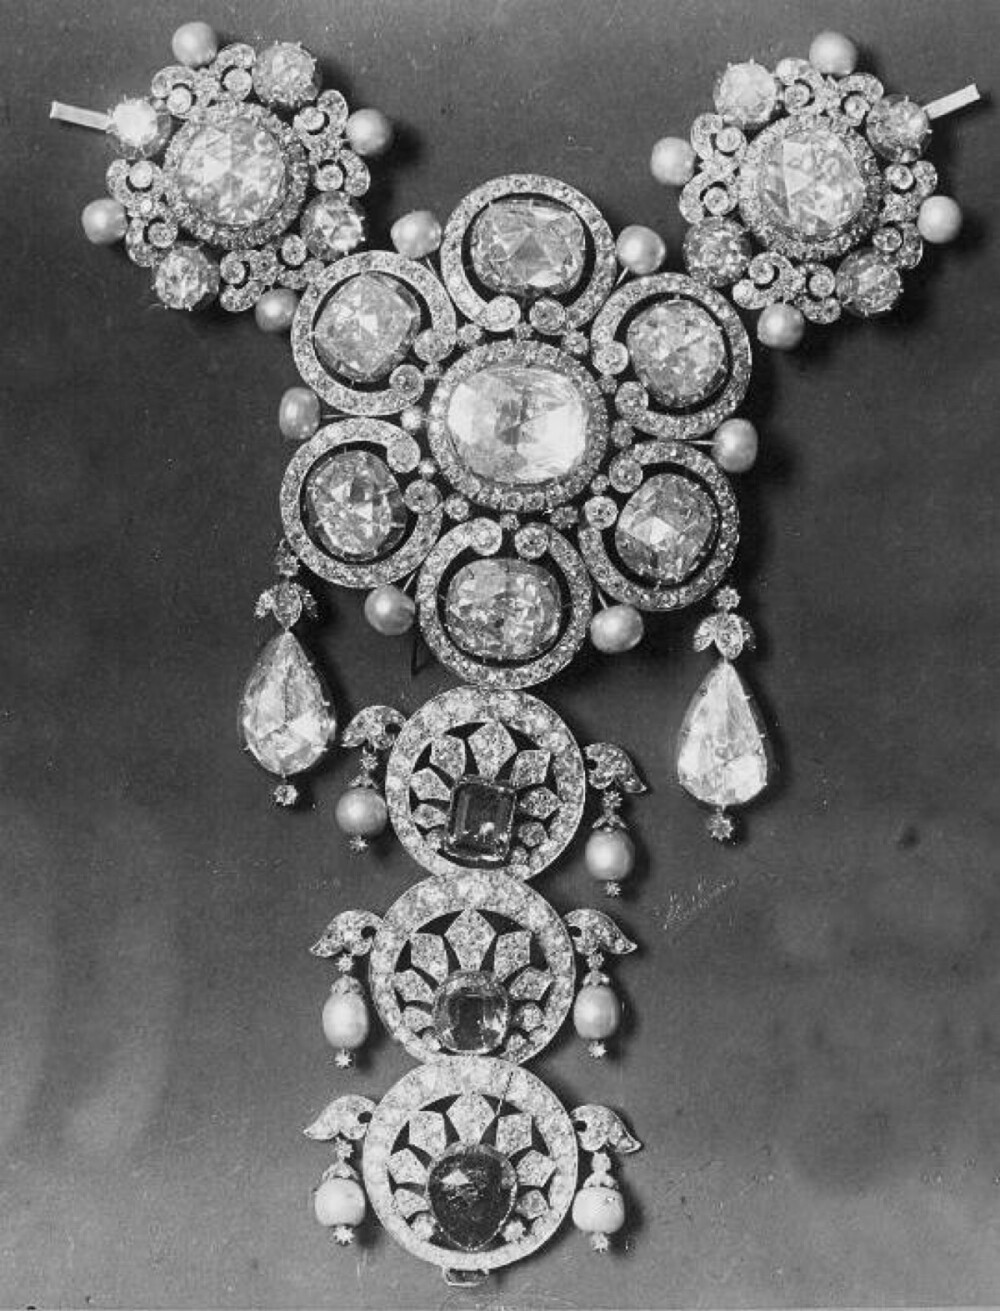 拿破仑三世的妻子欧仁妮王后的珠宝收藏。珠宝照片拍摄于1850年代，虽然是黑白照片但依然能感受到这些珠宝的璀璨绚丽